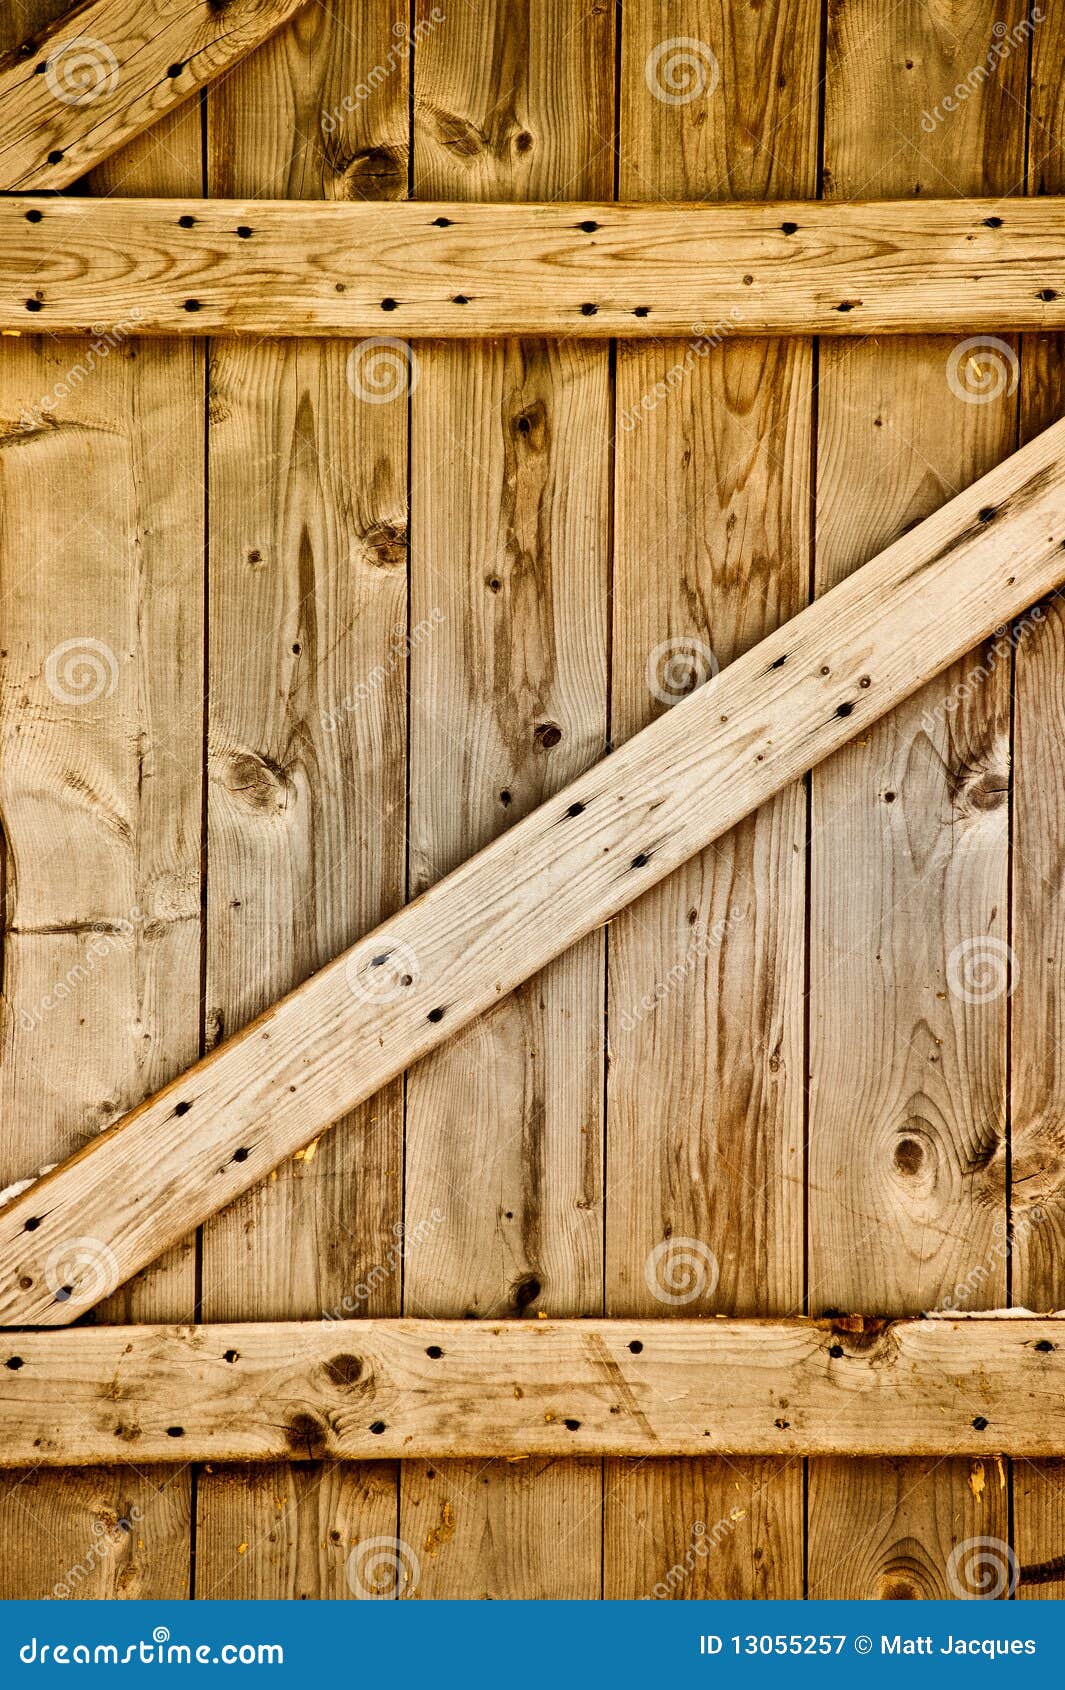 Rustic Barn Wood Door